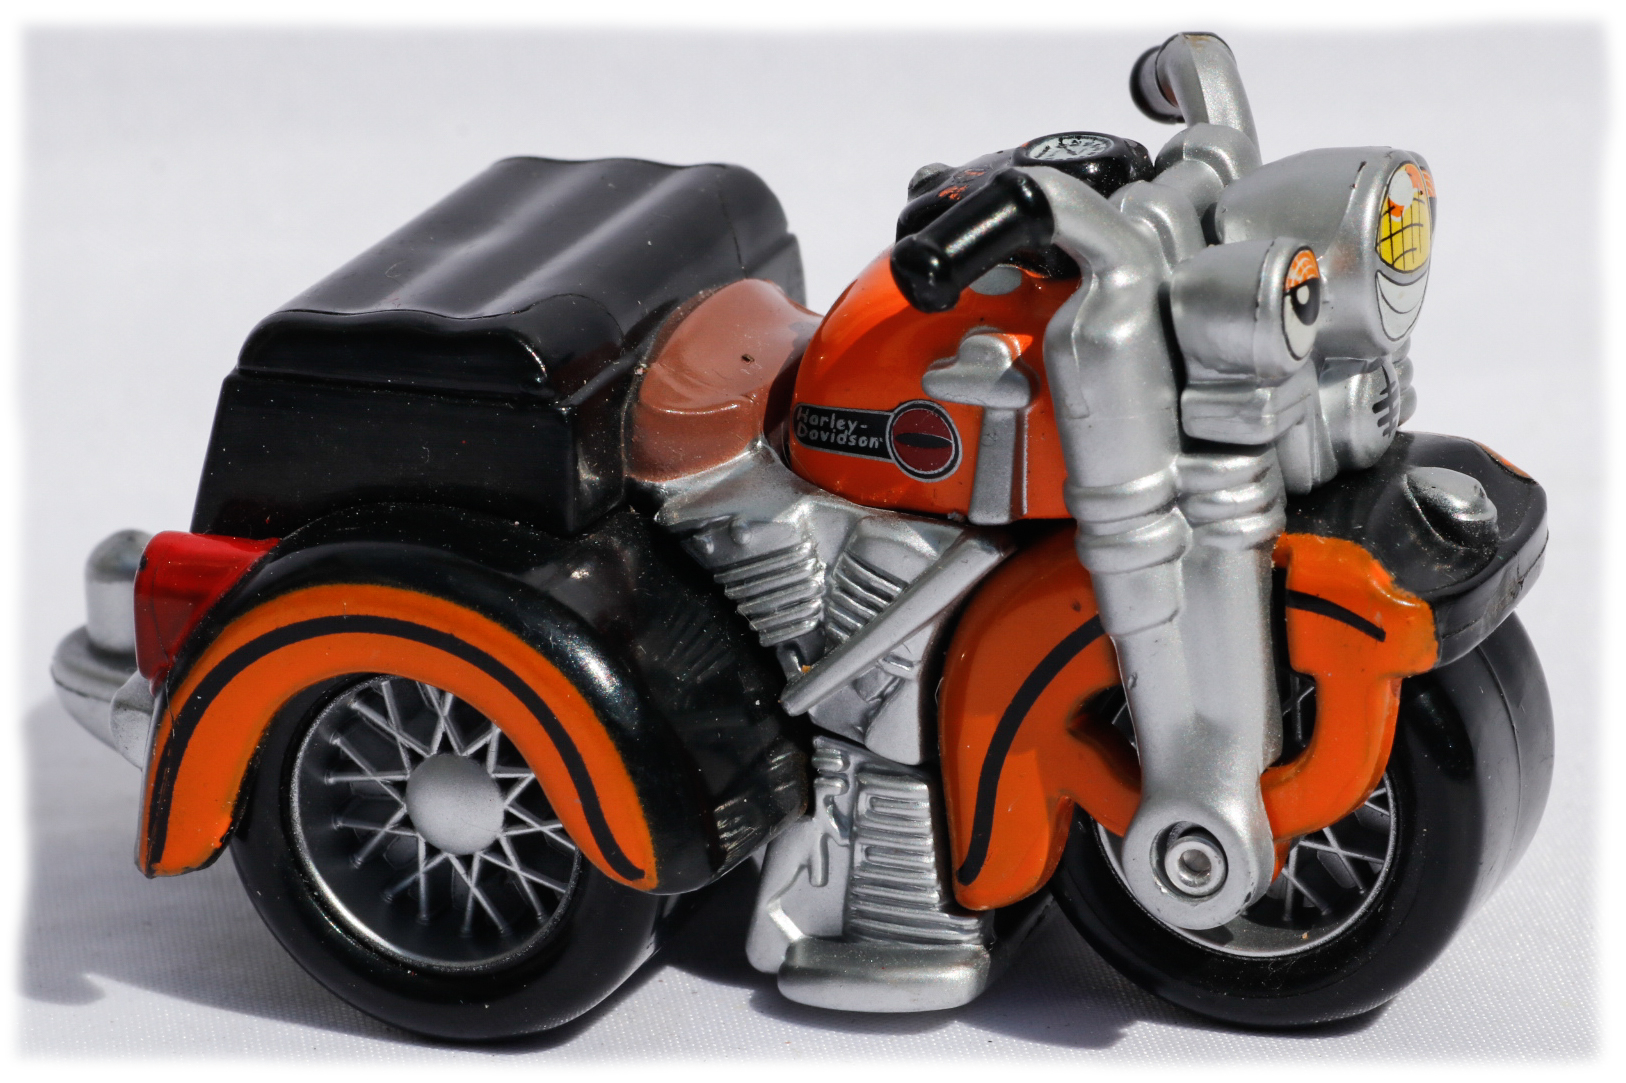 Maisto Cycle Town Harley Davidson Servi-car